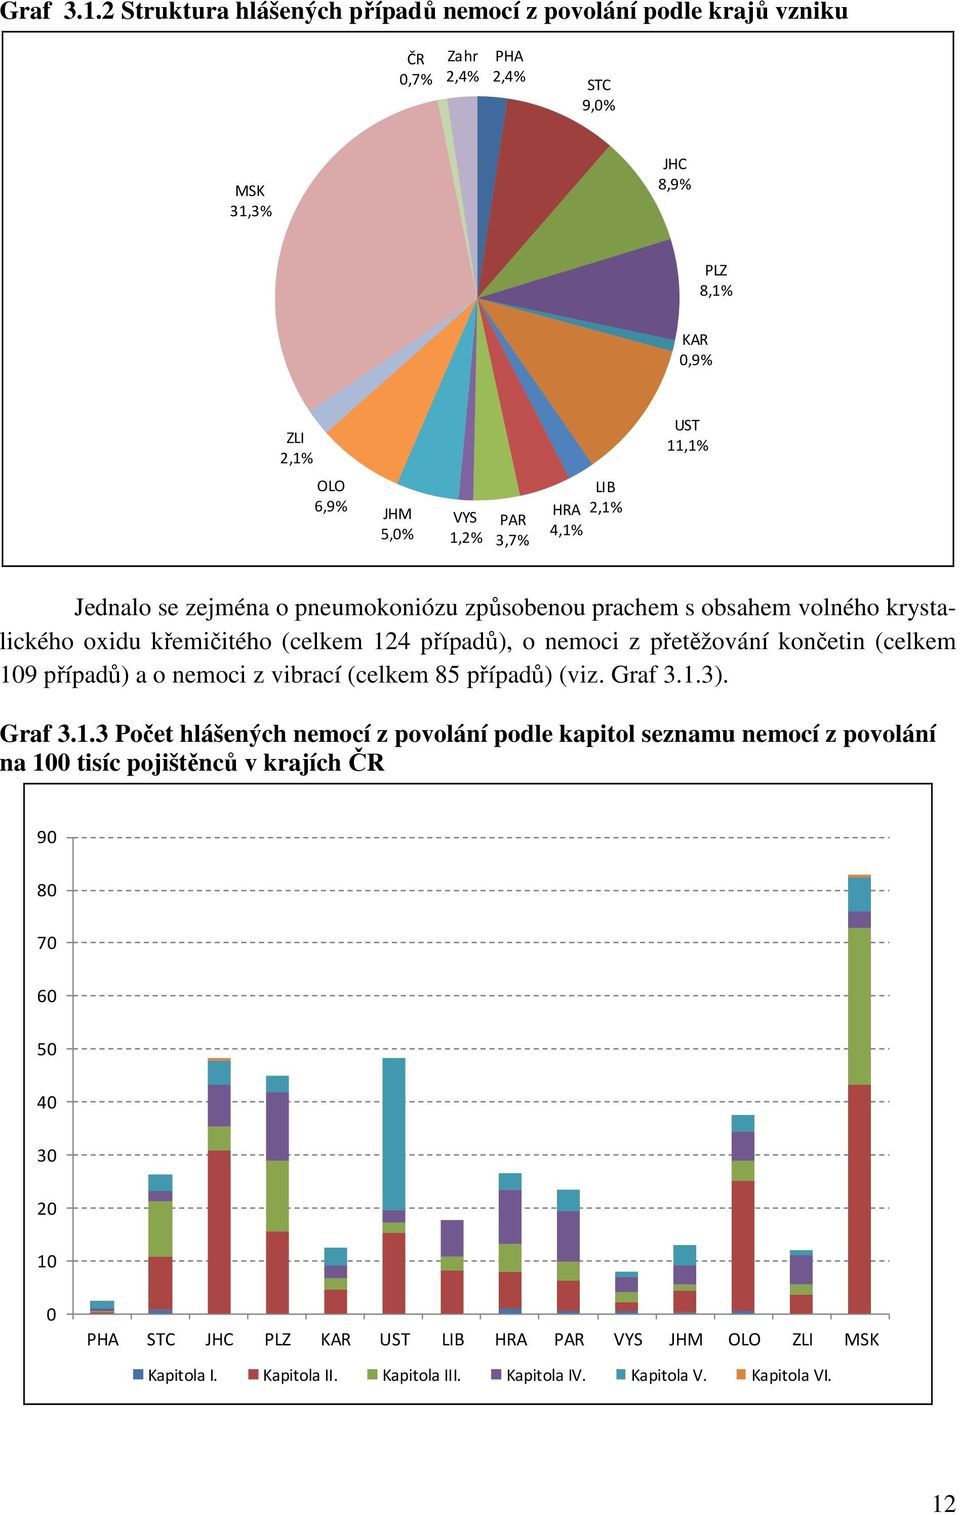 PAR 3,7% LIB 2,1% HRA 4,1% Jednalo se zejména o pneumokoniózu způsobenou prachem s obsahem volného krystalického oxidu křemičitého (celkem 124 případů), o nemoci z přetěžování končetin